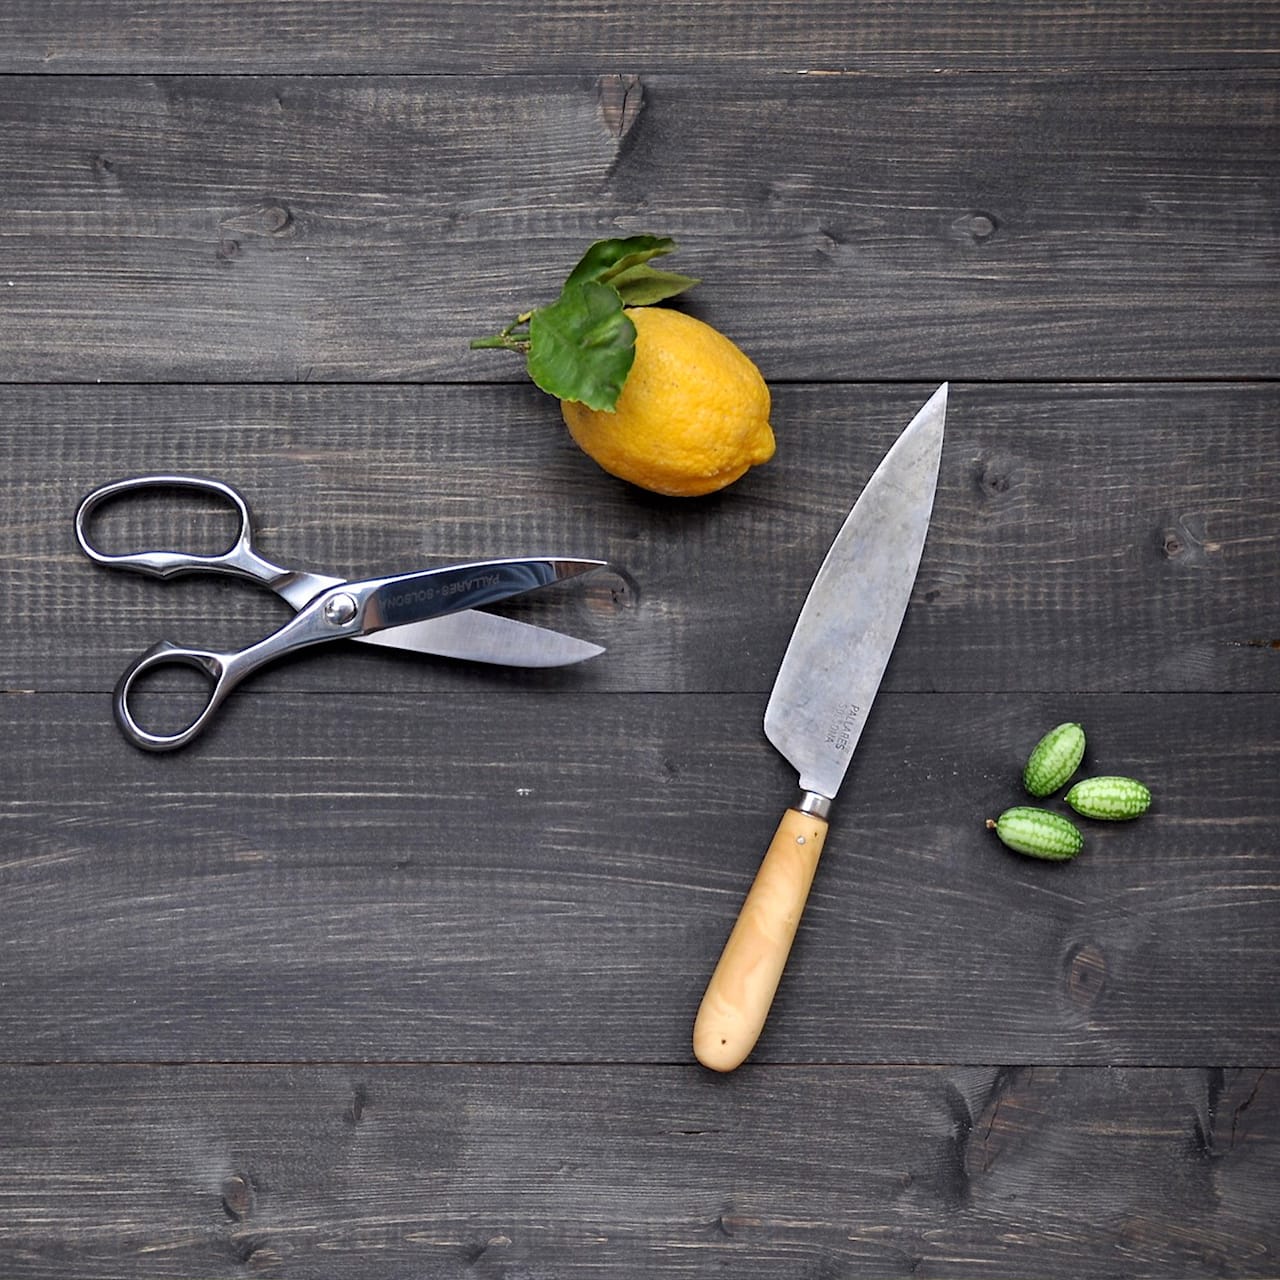 Pallarès Professional Kitchen Scissors